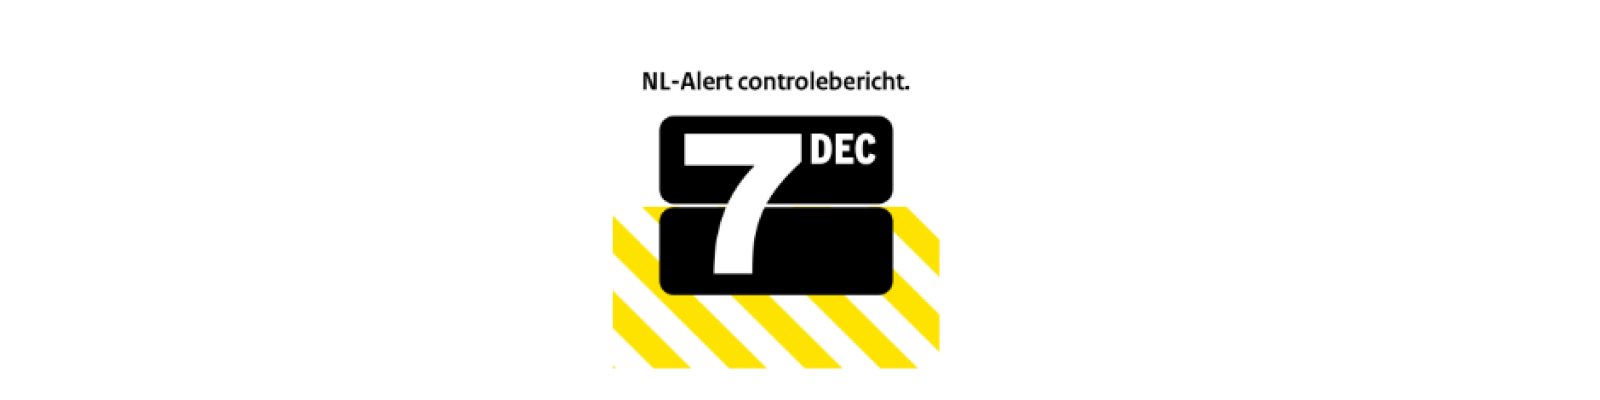 NL-Alert 7 december Zeeland